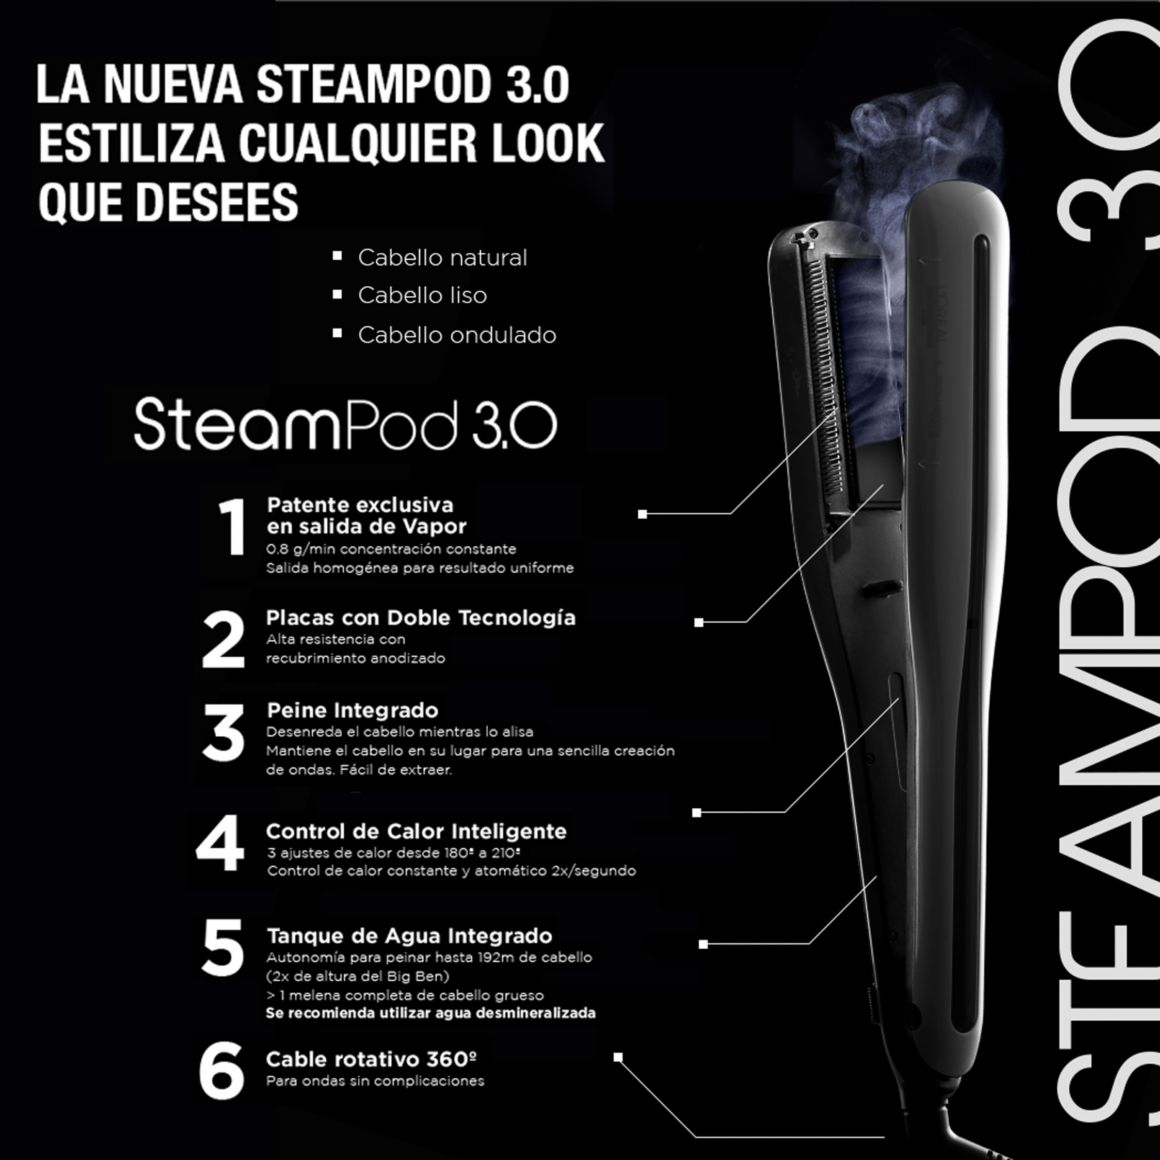 Steampod 3.0